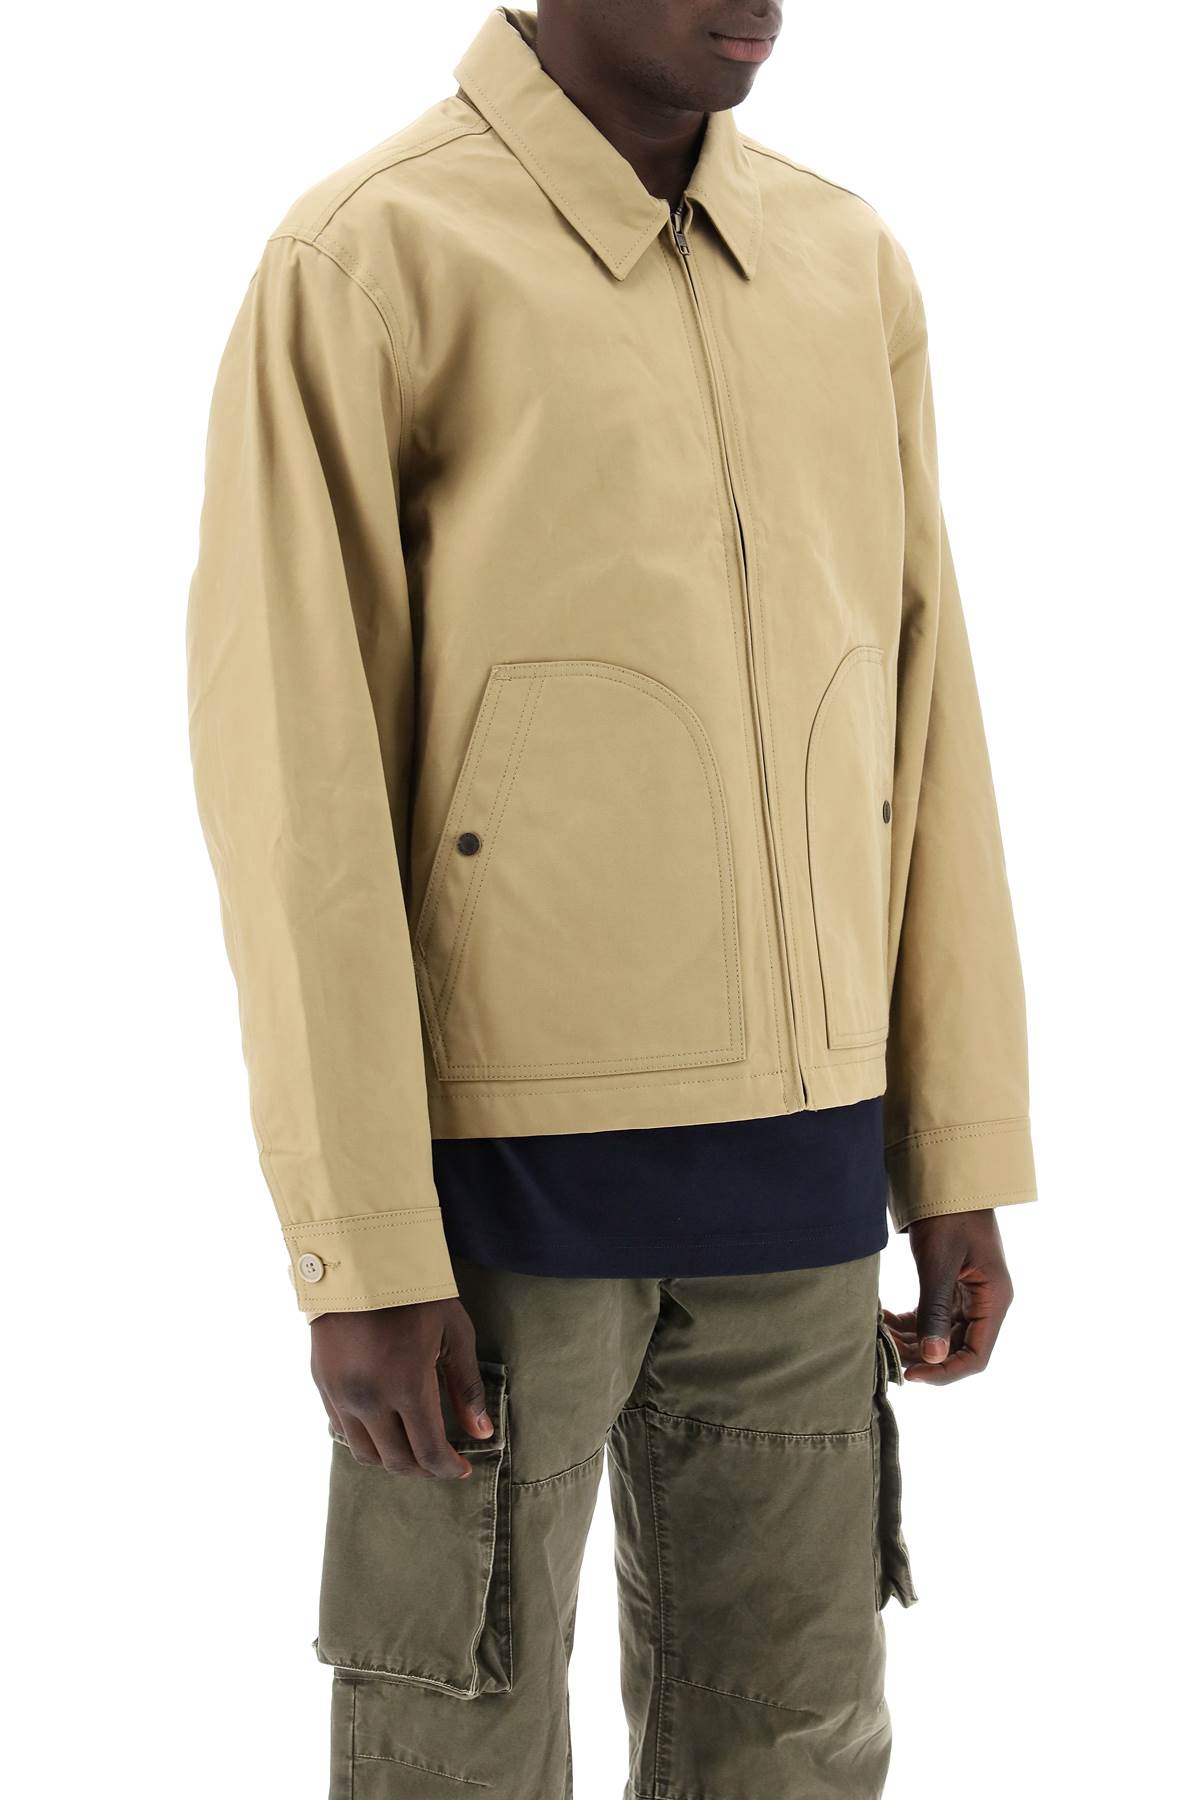 Filson ranger crewman jacket-1